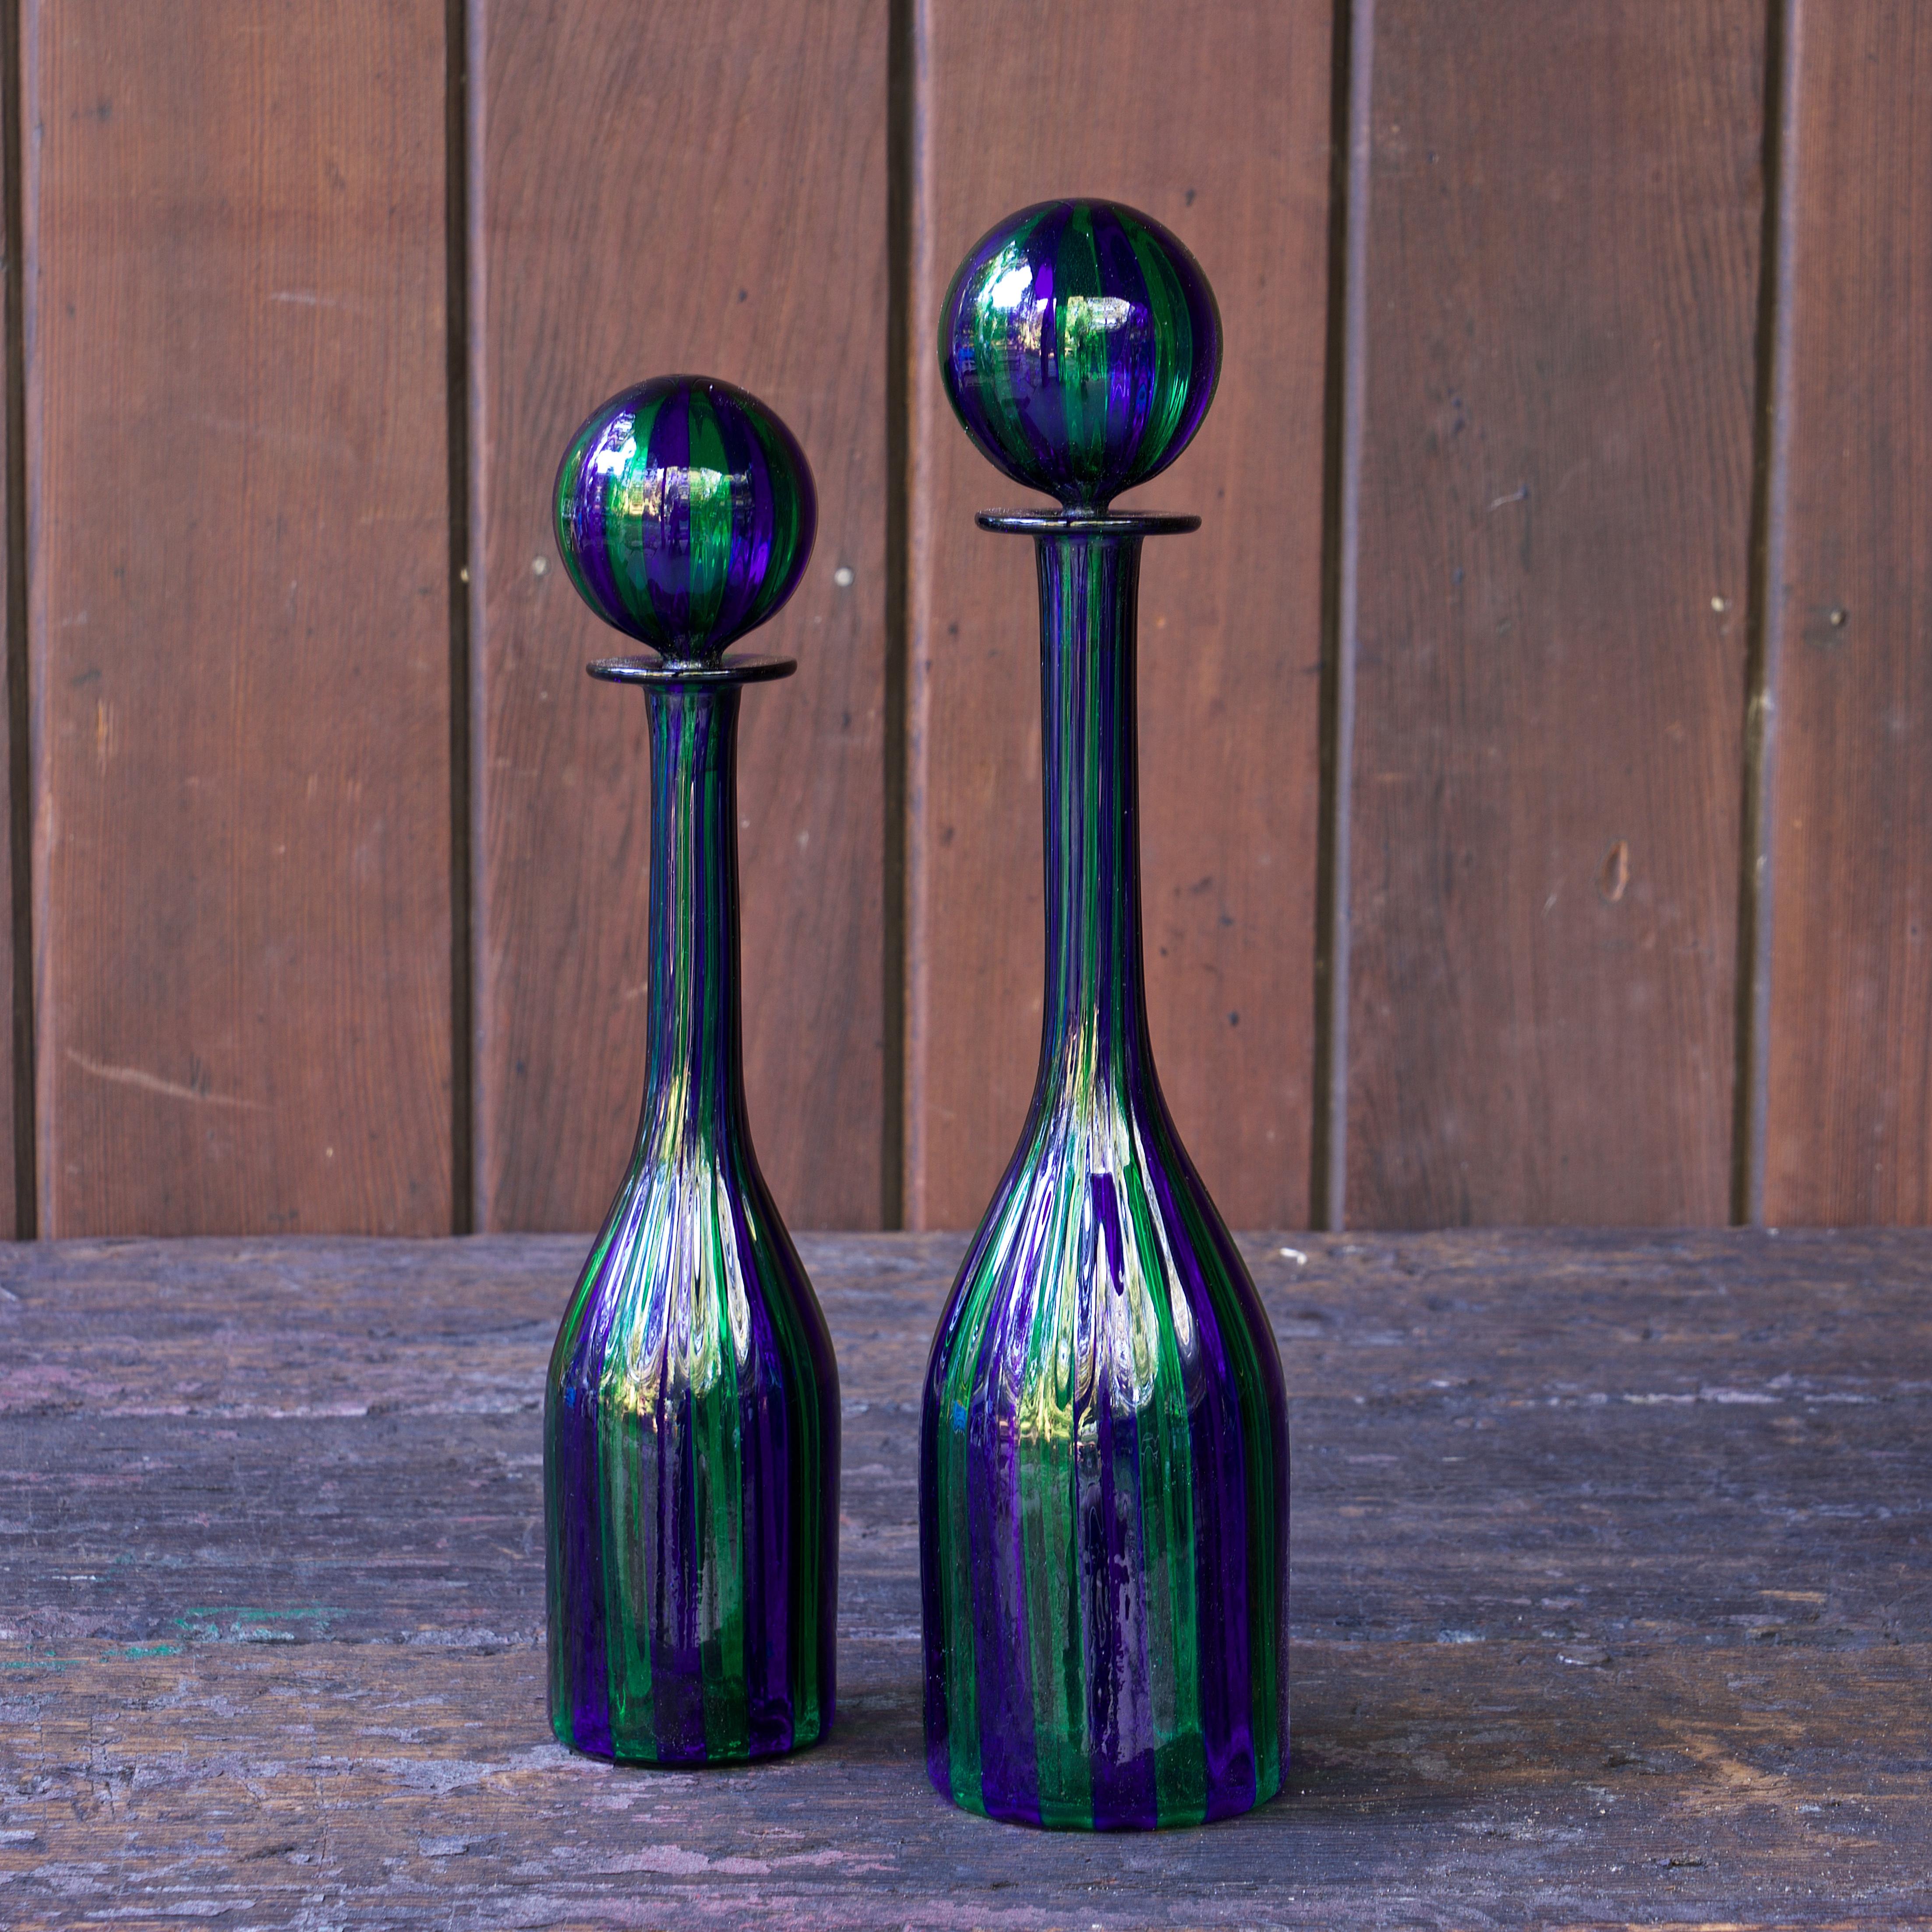 Unbekannter Entwurf/Macher, unsigniert, möglicherweise Murano.

Ein erstaunliches Paar mundgeblasener Kunstglasflaschen mit passenden Verschlüssen.  Dünnwandig, streifig durch die Flaschen und die Verschlüsse.  Hochwertige Qualität aus der Mitte des